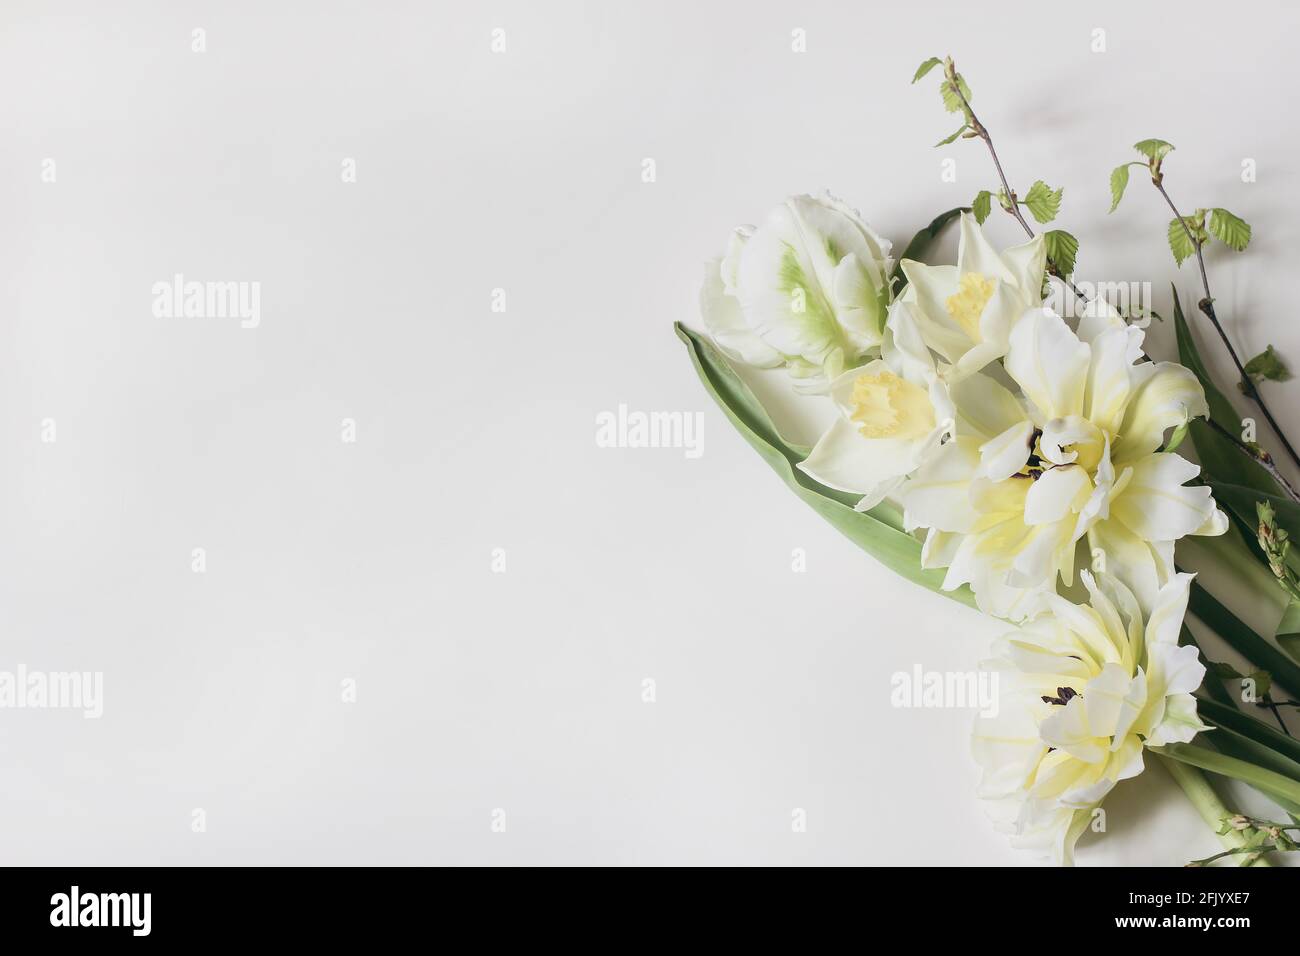 Composición femenina de marco floral. Tela de bandera decorativa hecha de tulipanes blancos y amarillos hermosos. Narcisos flores con ramas de abedul. Blanco Foto de stock